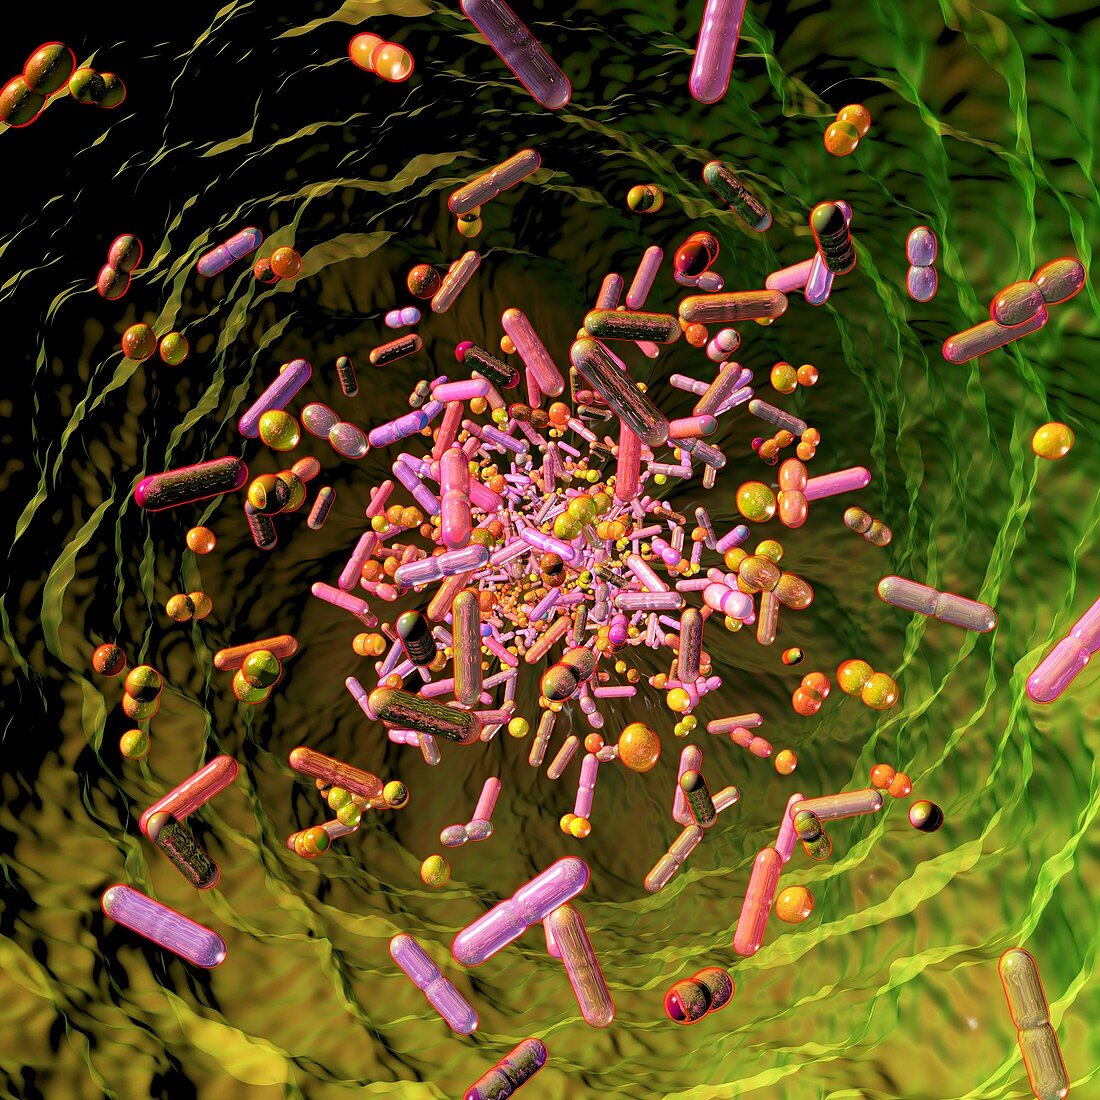 Human microbiome, conceptual illustration